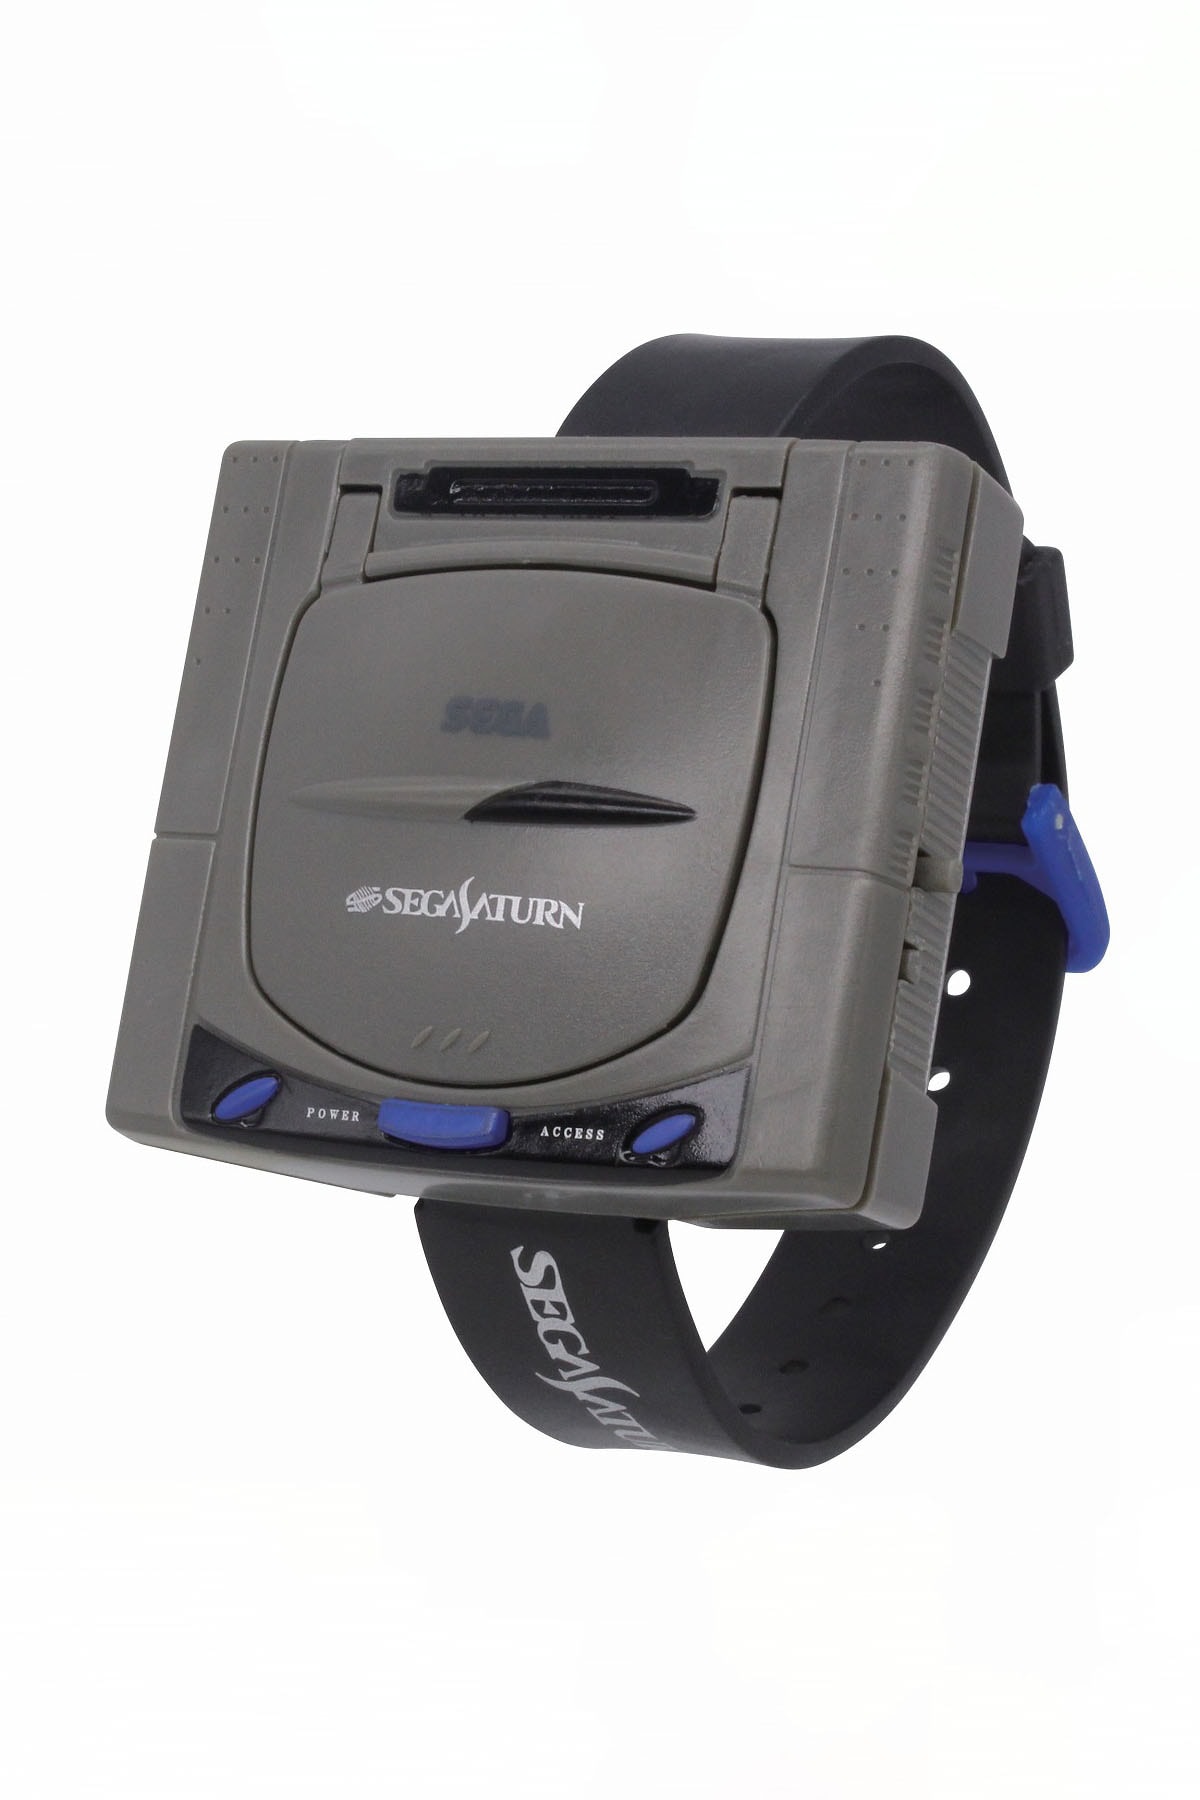 Takara Tomy Arts 推出 PlayStation 1、SEGA Saturn 造型手錶扭蛋